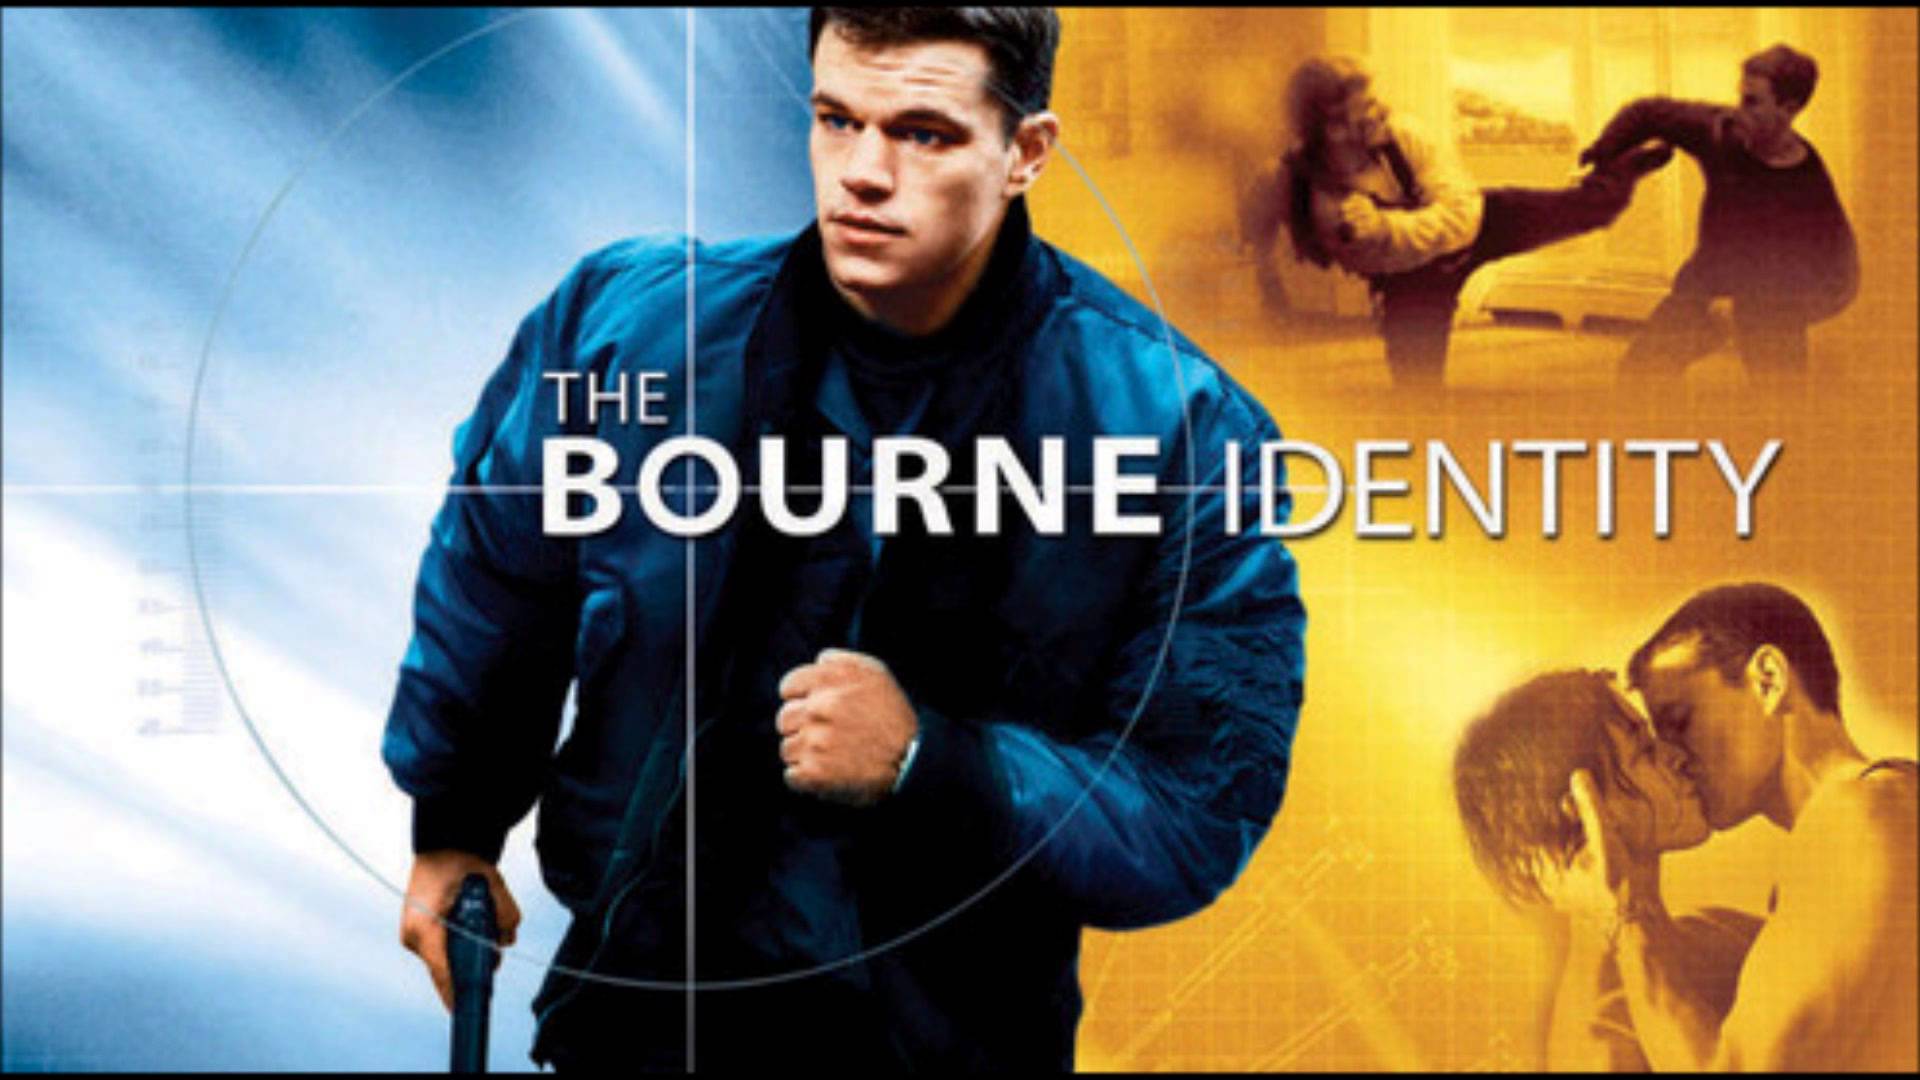 Jason Bourne caută să își găsească identitatea